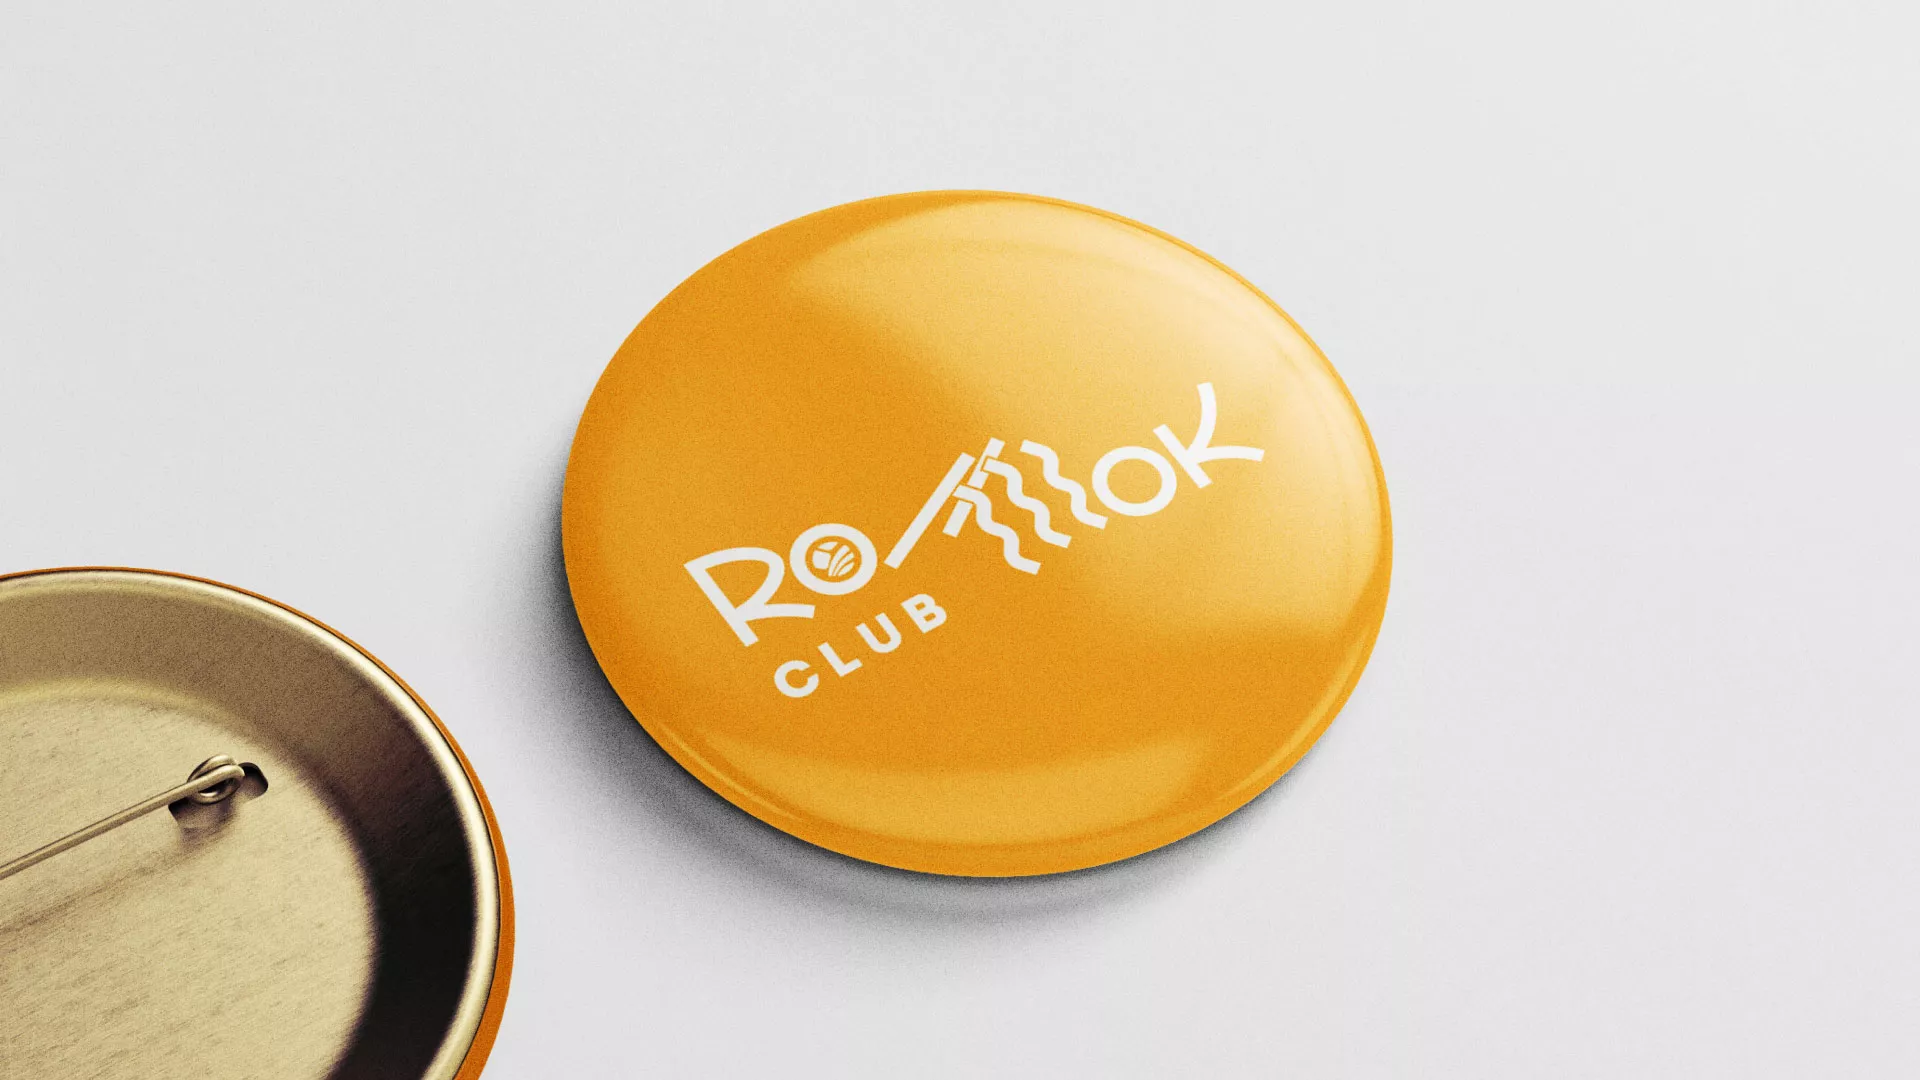 Создание логотипа суши-бара «Roll Wok Club» в Майском